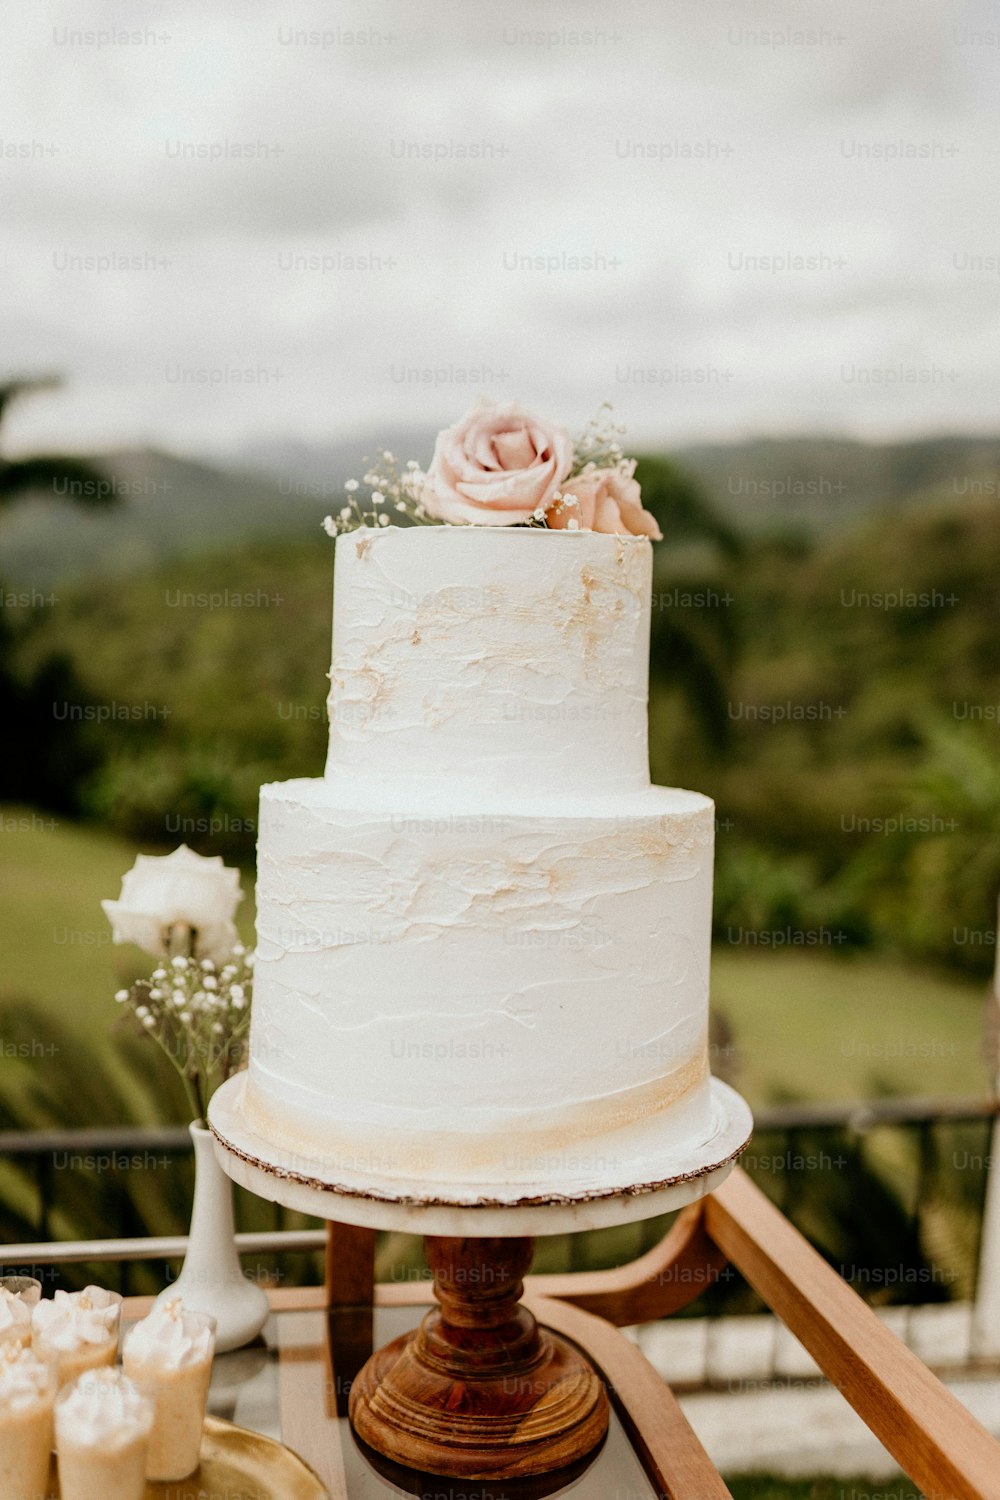 Más de 100 fotos de pasteles de boda | Descargar imágenes gratis en Unsplash